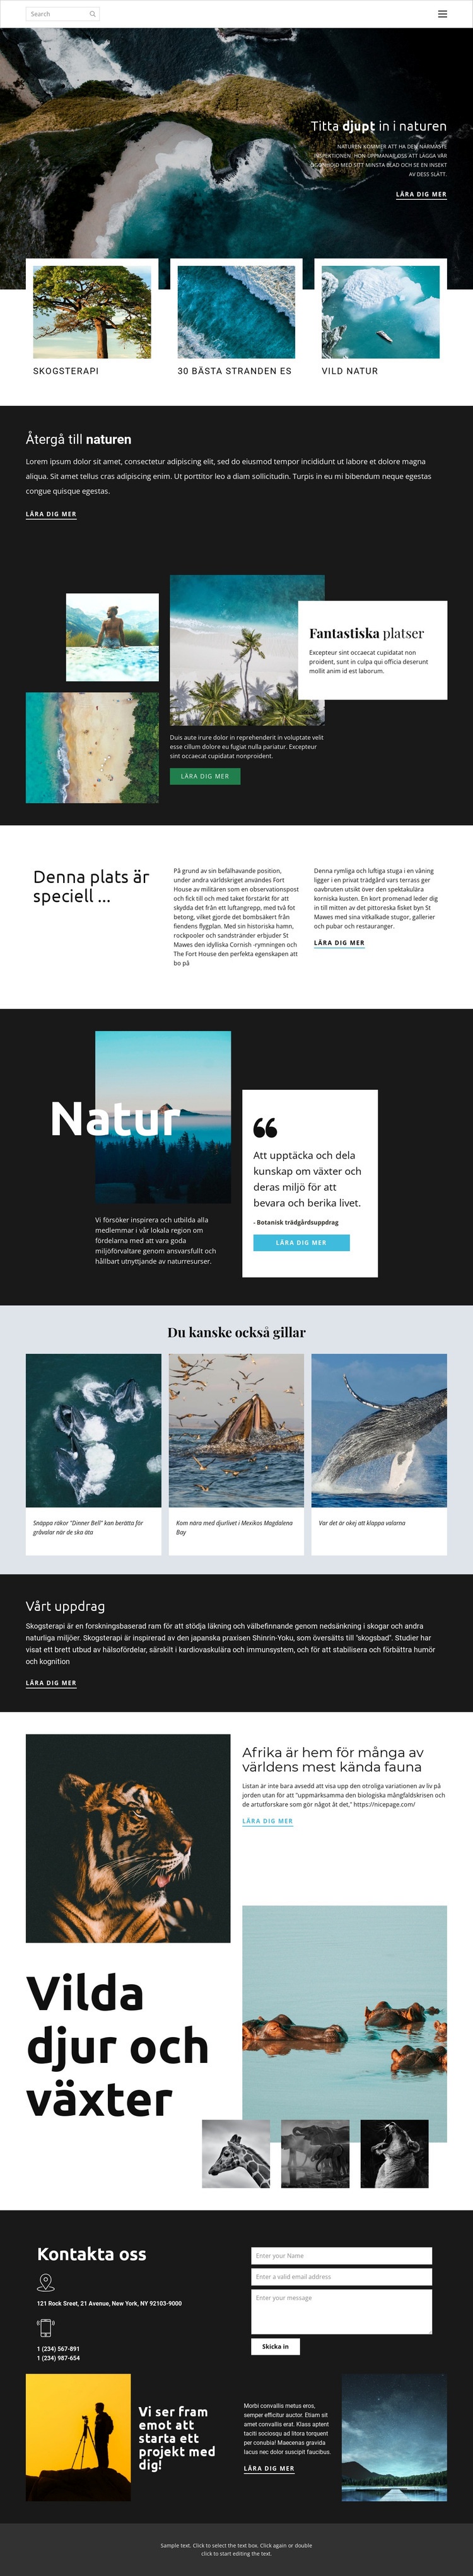 Utforska vilda djur och natur CSS -mall